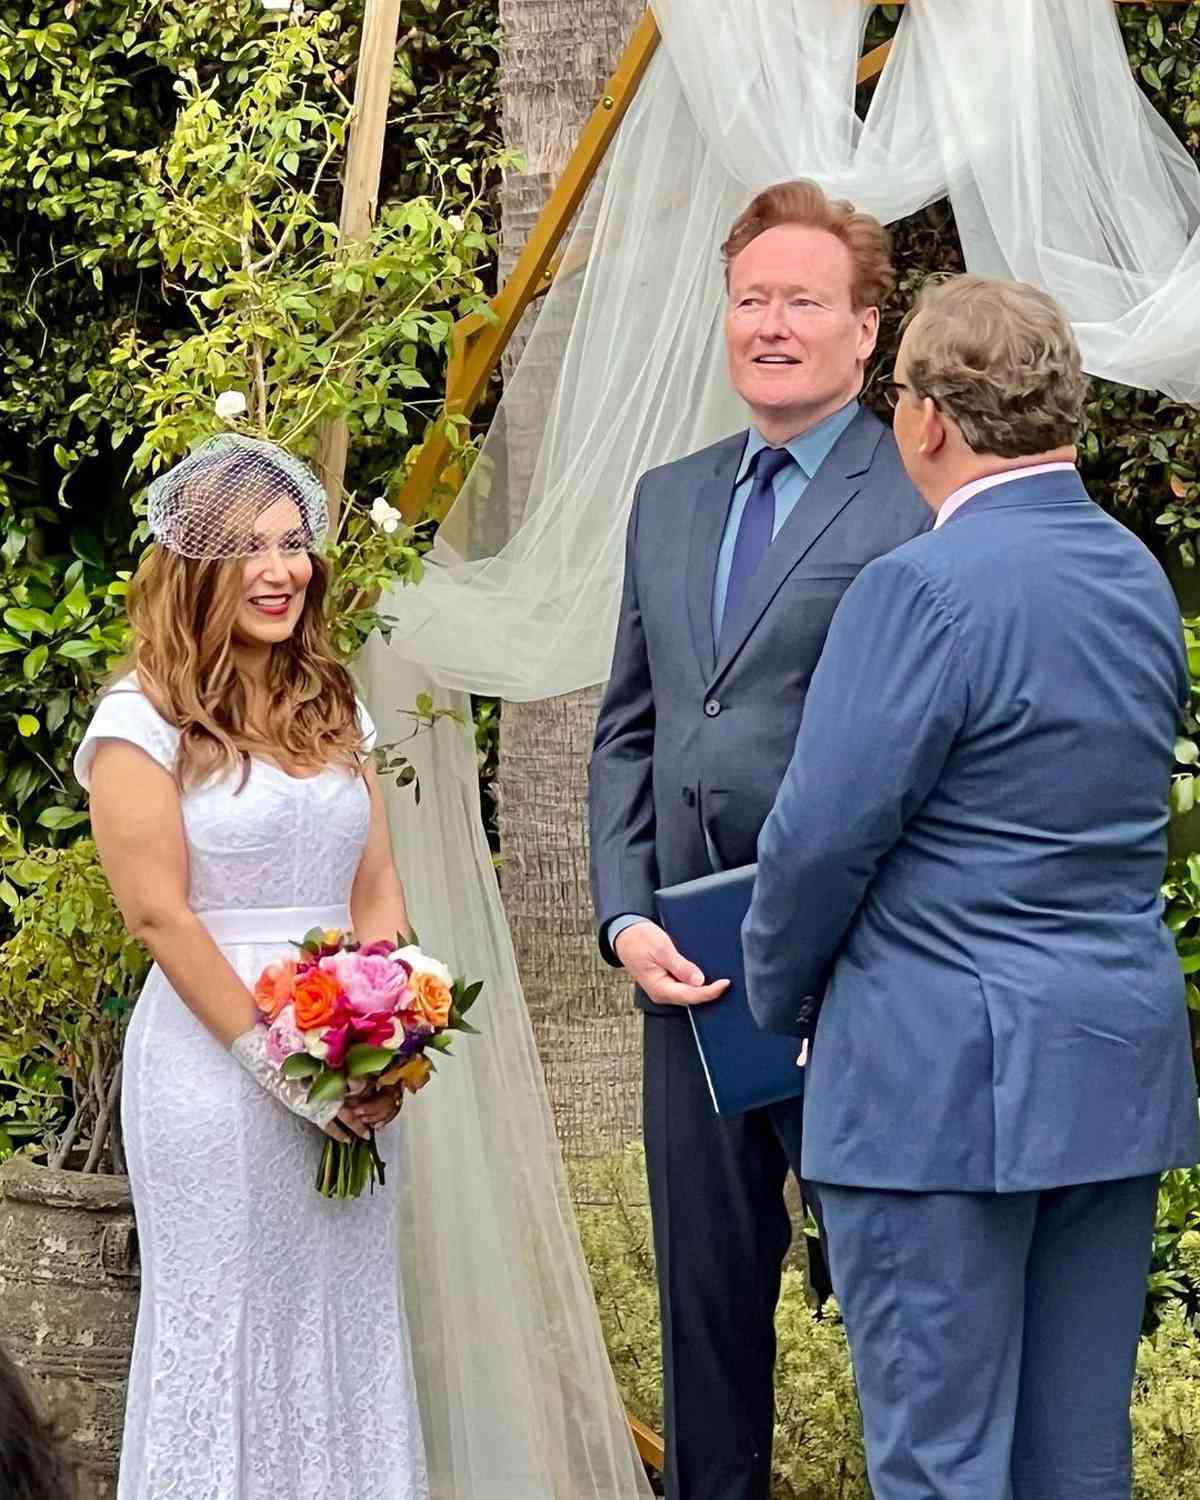 Conan O'Brien Officiates Comedy Partner Andy Richter's Wedding